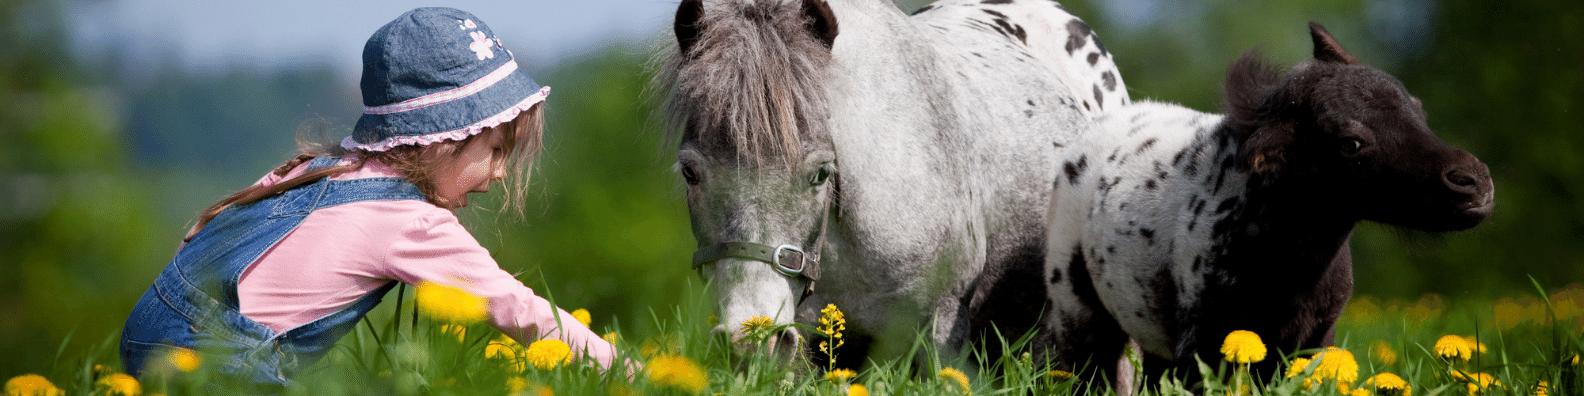 возраст лошади или коня по человеческим меркам